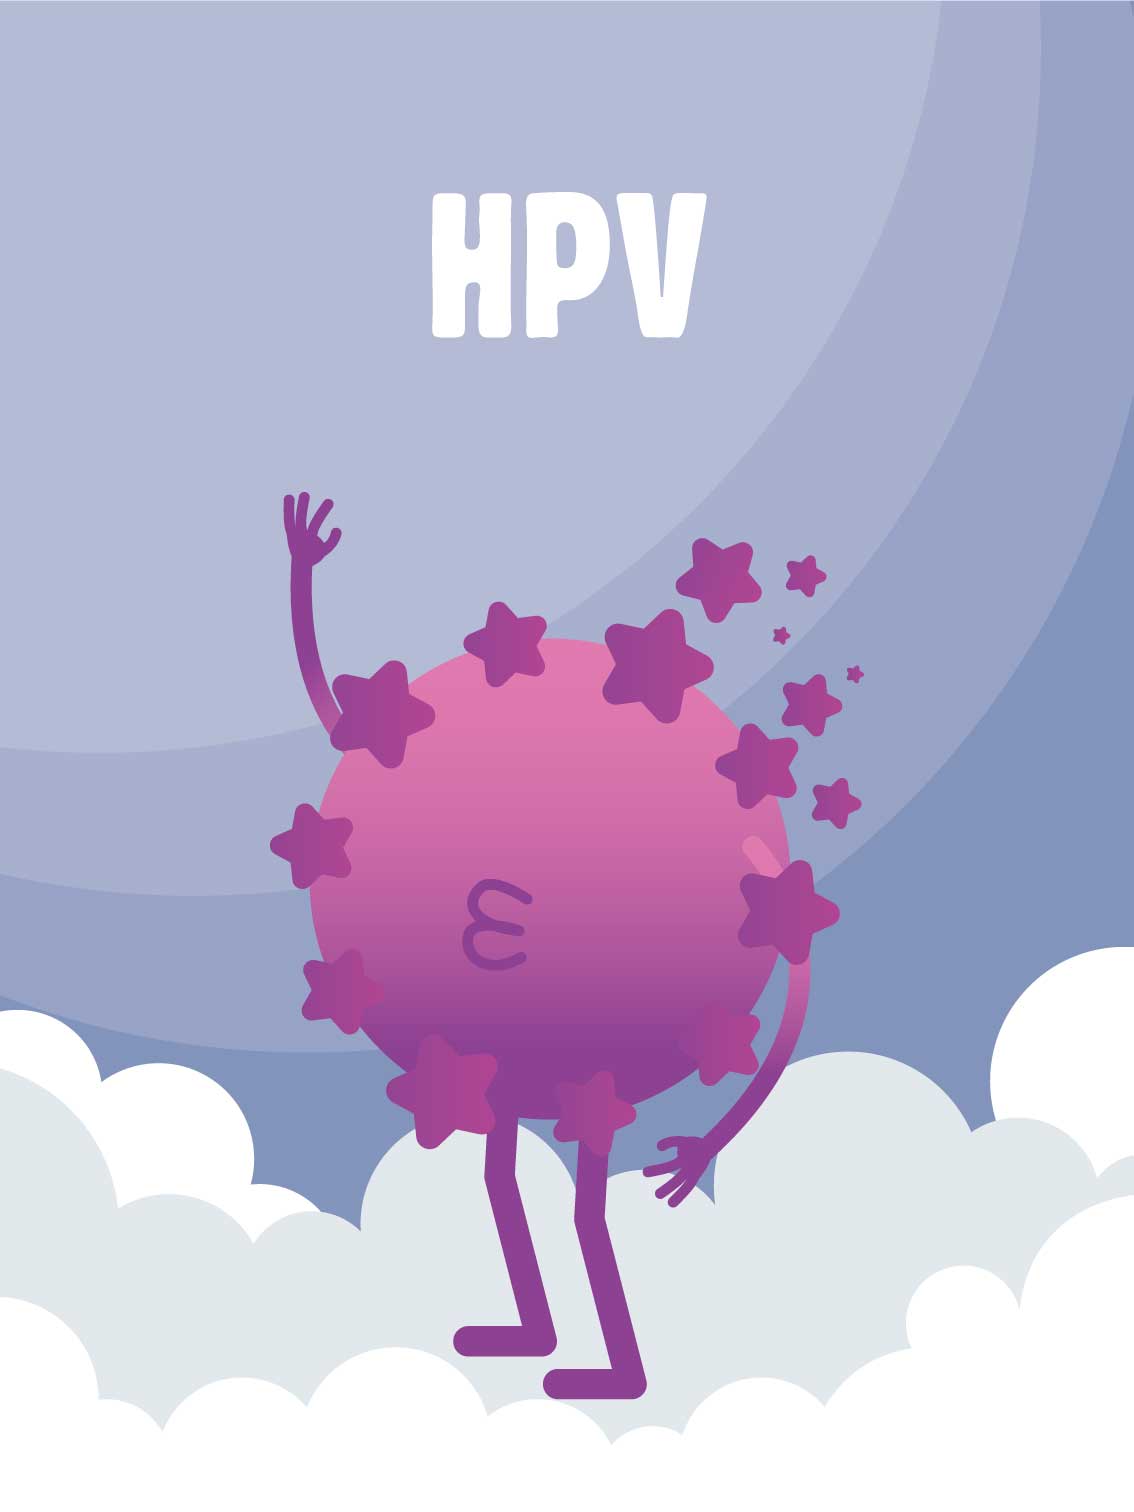 HPV, Human Papillomavirus, dépistage, IST, MST, infections sexuellement transmissibles, rapport sexuel à risque